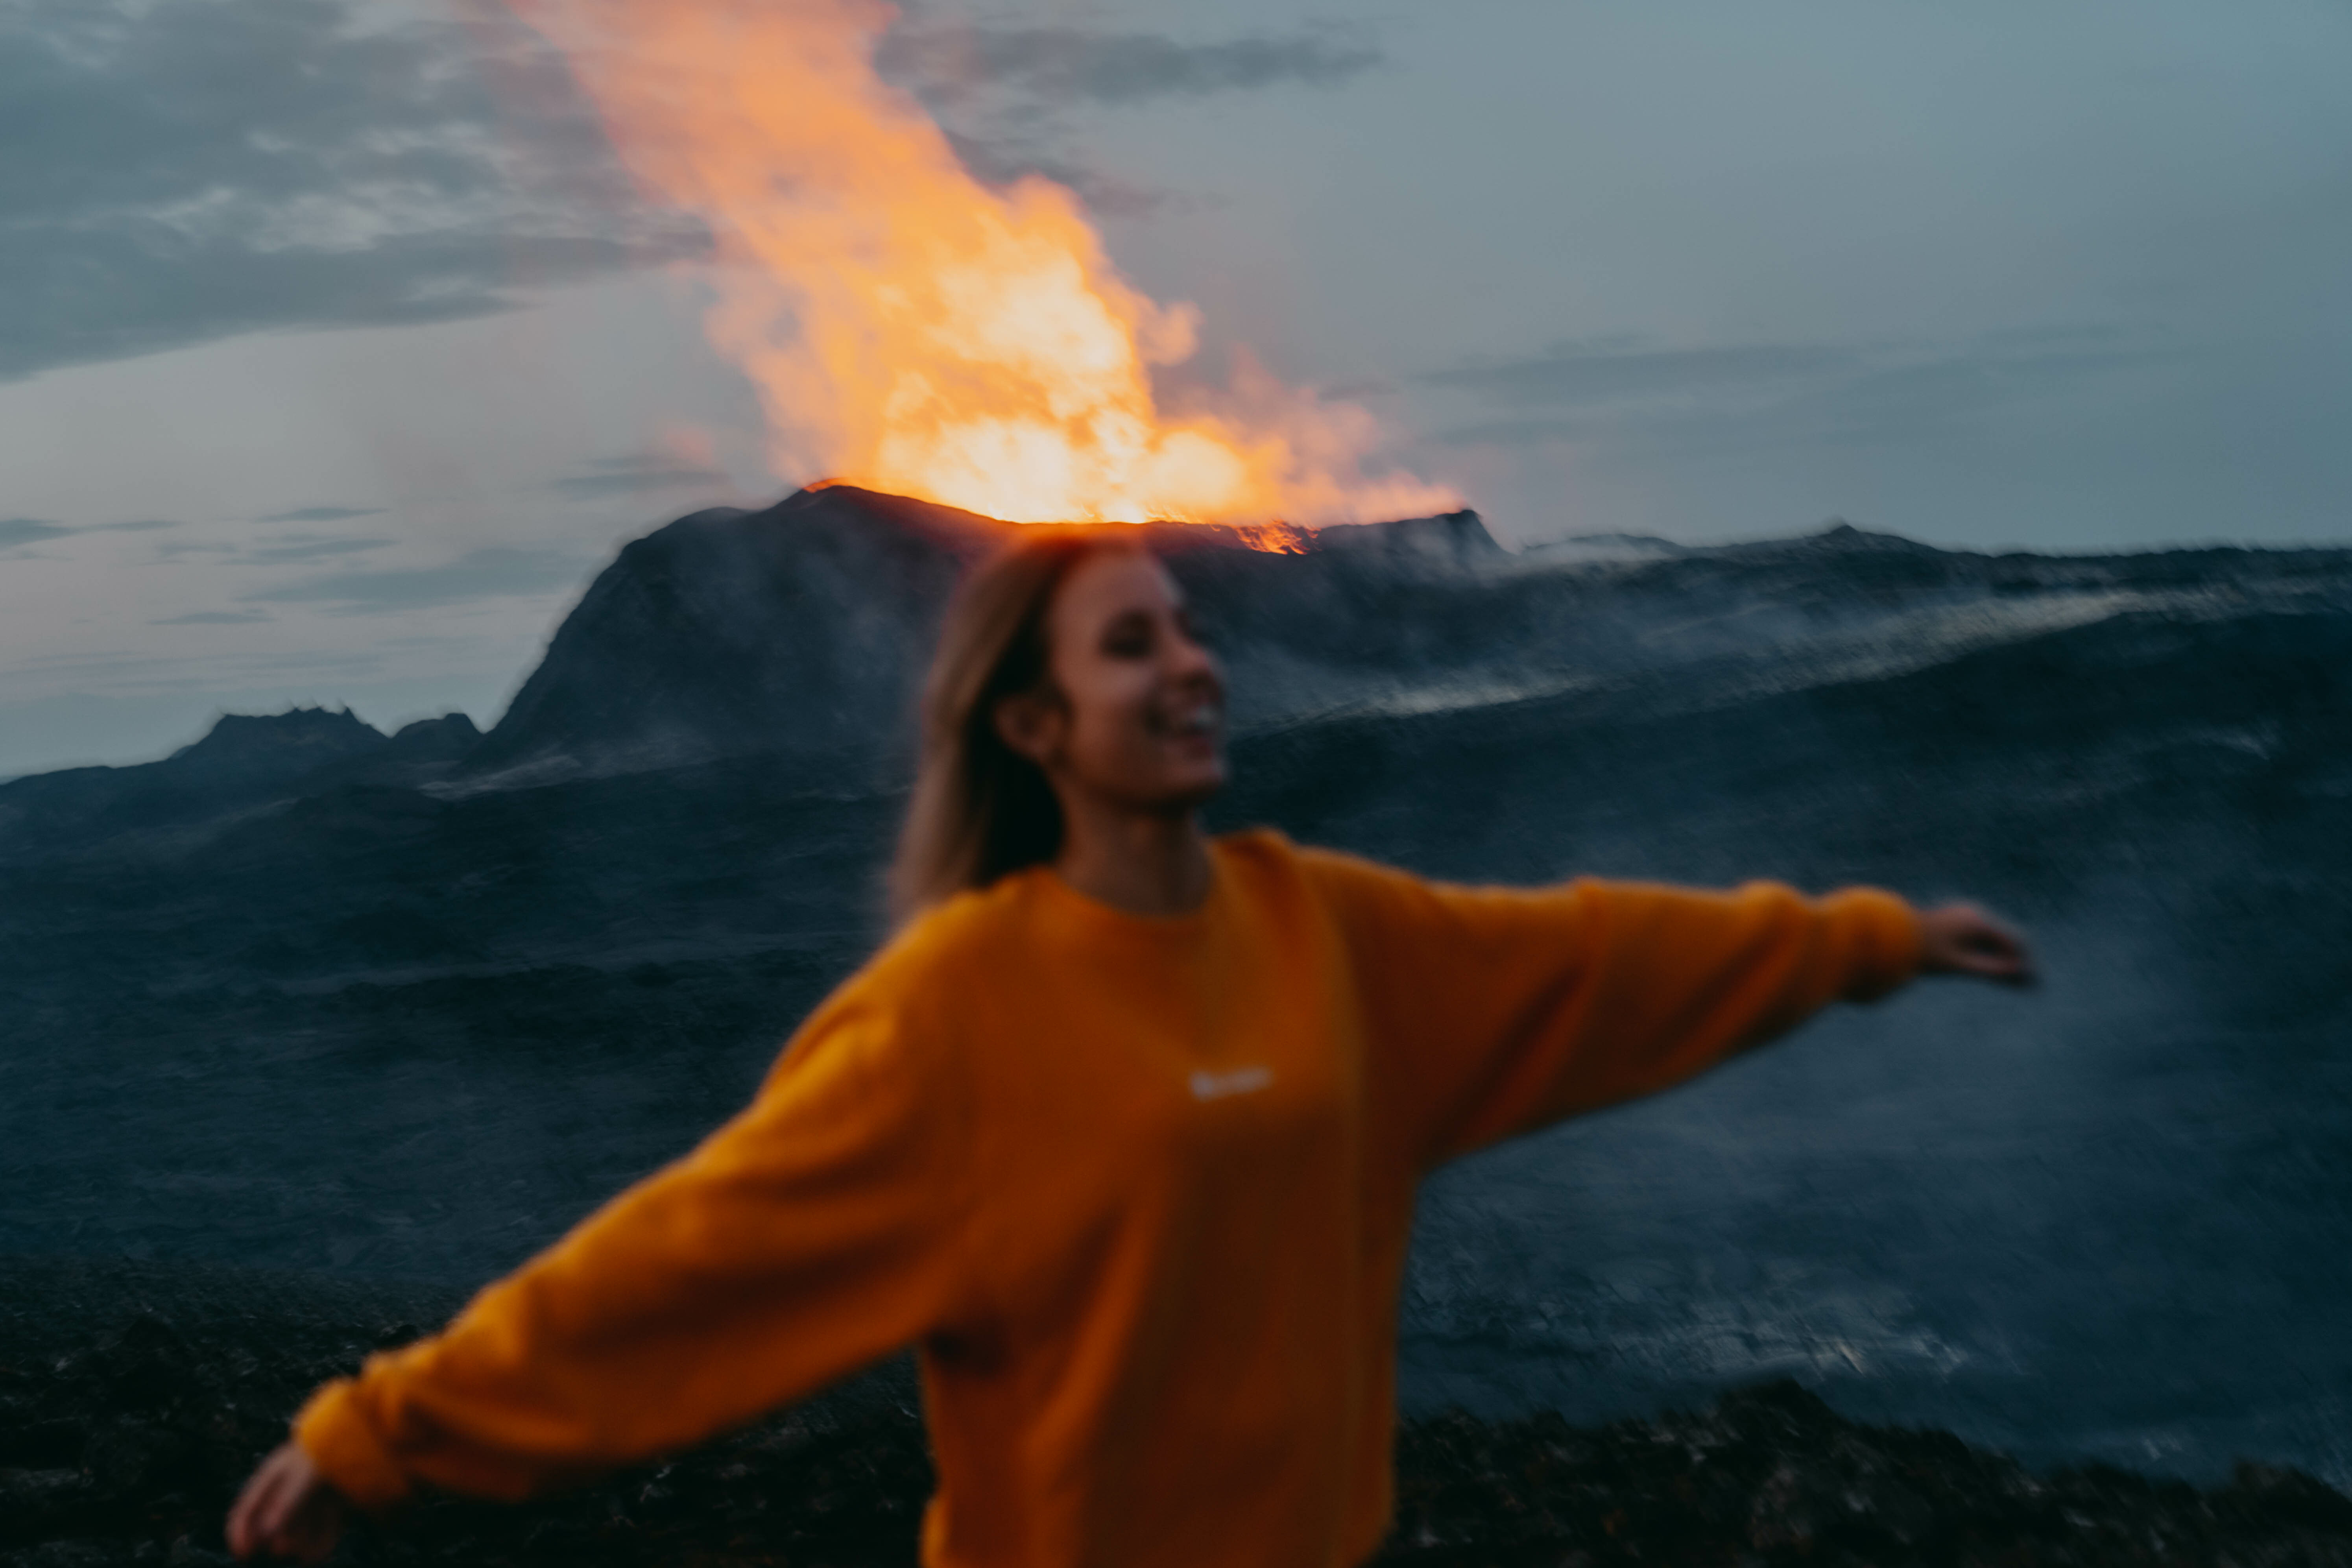 Island Vulkanausbruch; 
Frau in orangenem Pullover mit zur Seite ausgestreckten Armen steht lachend vor ausbrechendem Vulkan mit orangener Lava im Hintergrund. Leicht unscharf, um Bewegung der Frau zu sehen.